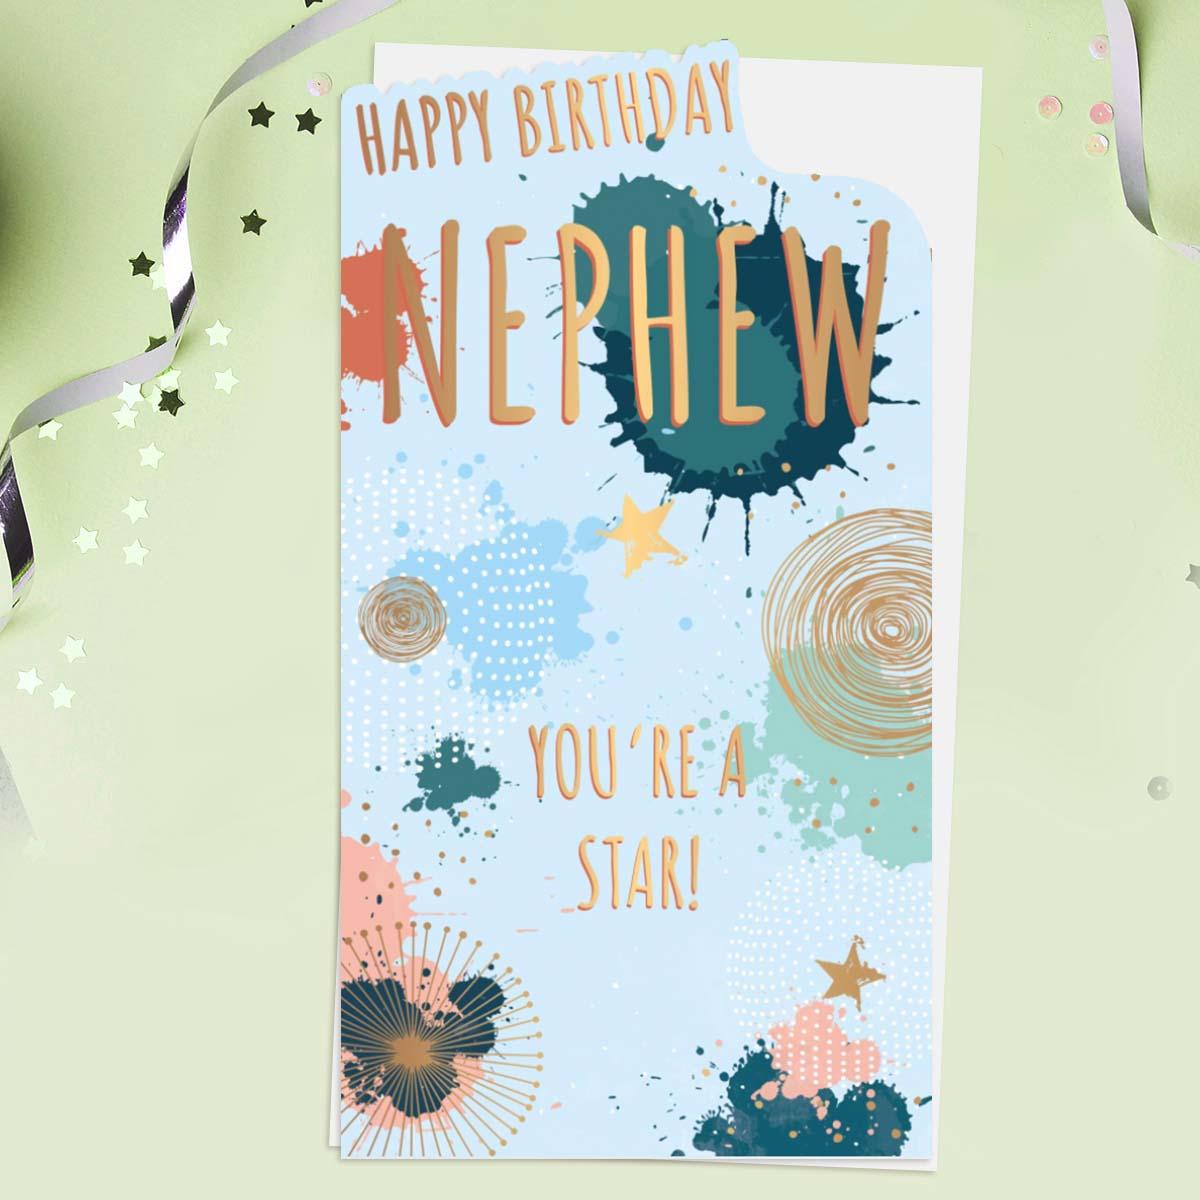 Happy Birthday Nephew Card Front Image